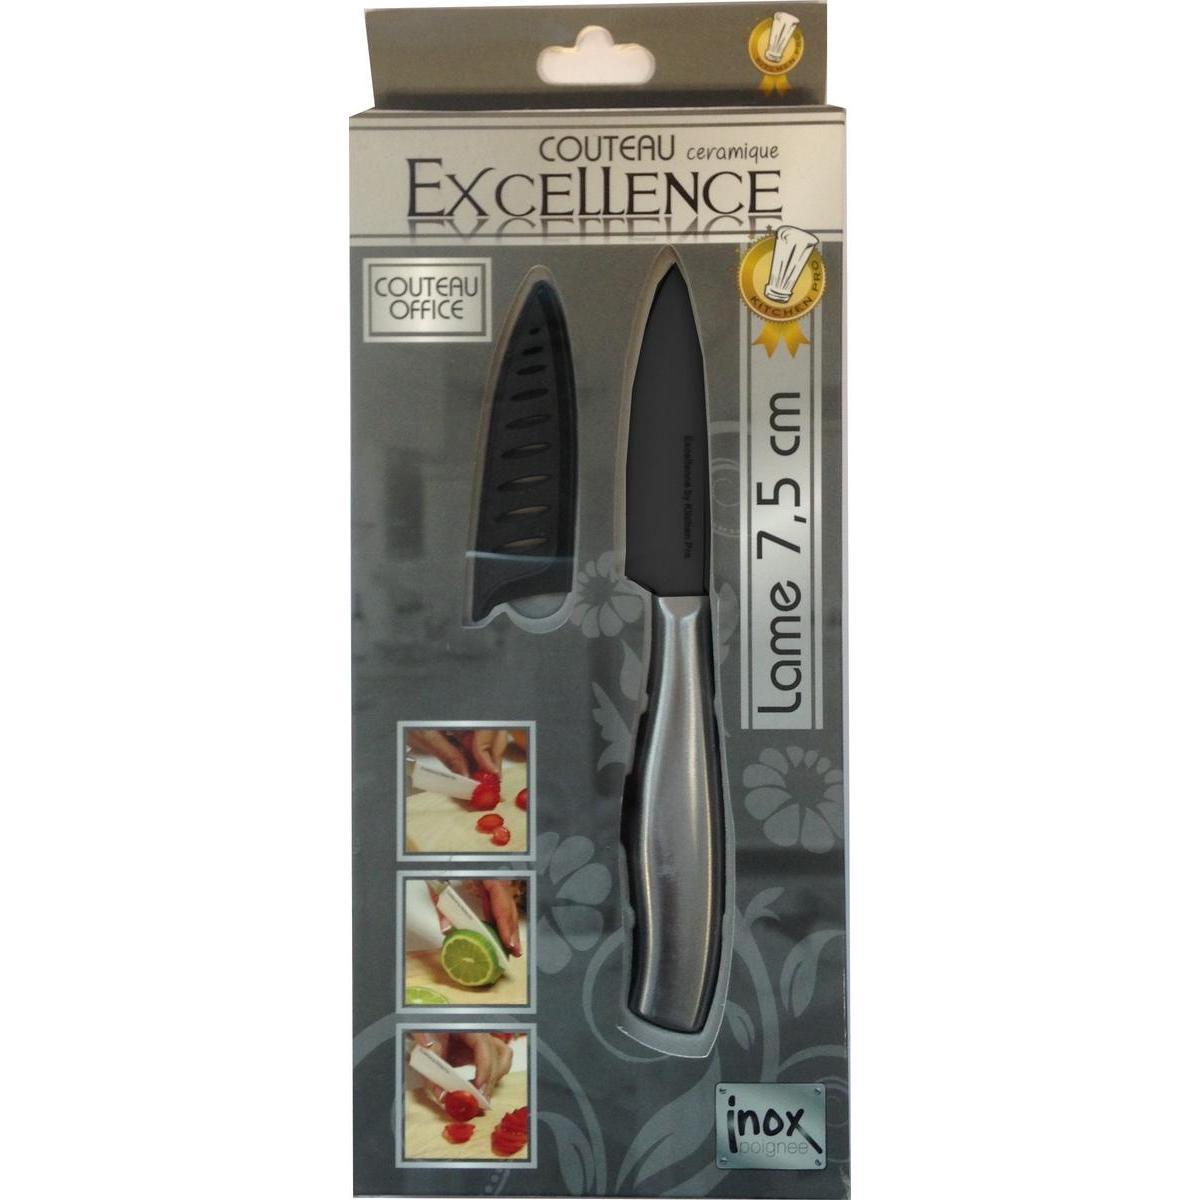 Couteau office - Céramique et inox - 18 cm - Noir et gris